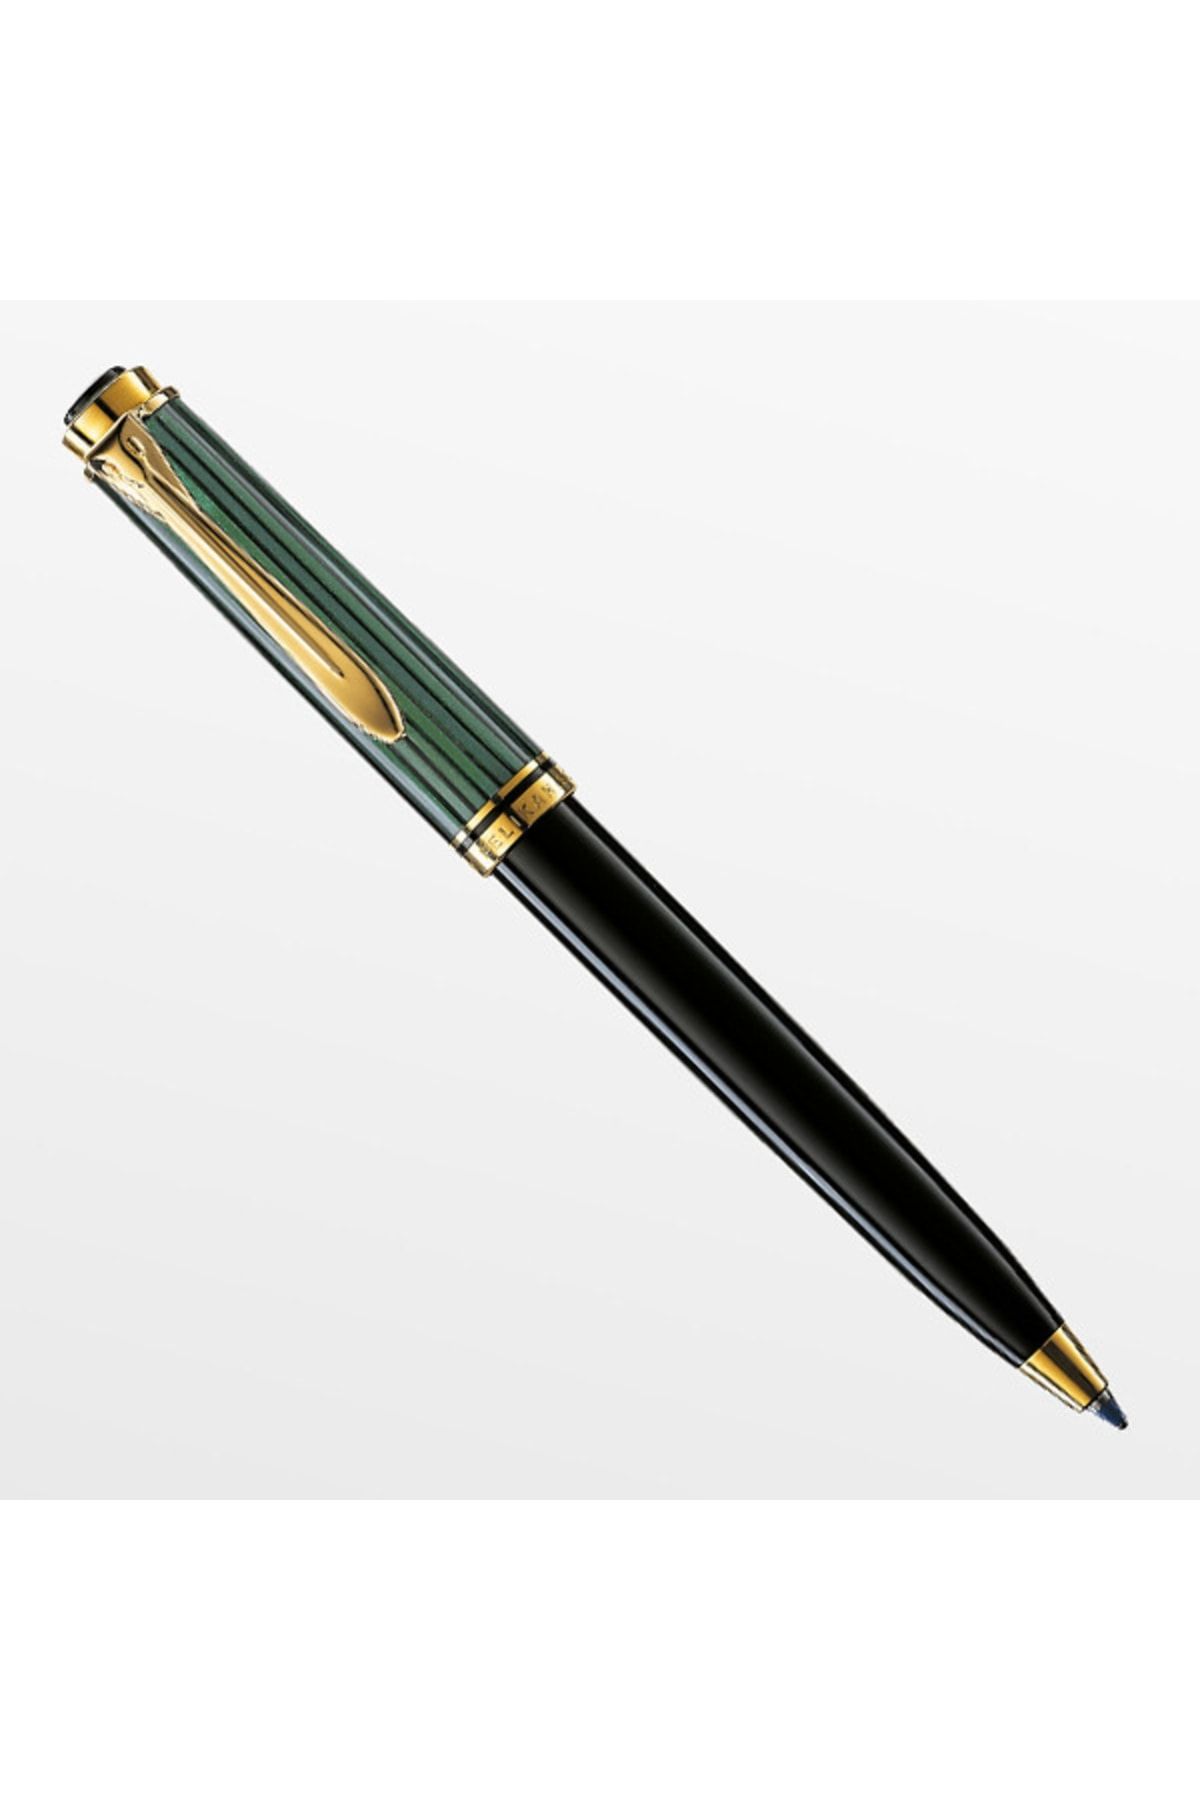 Pelikan Tükenmez Kalem 14 Ayar Altın Kaplama Yeşil-siyah K300